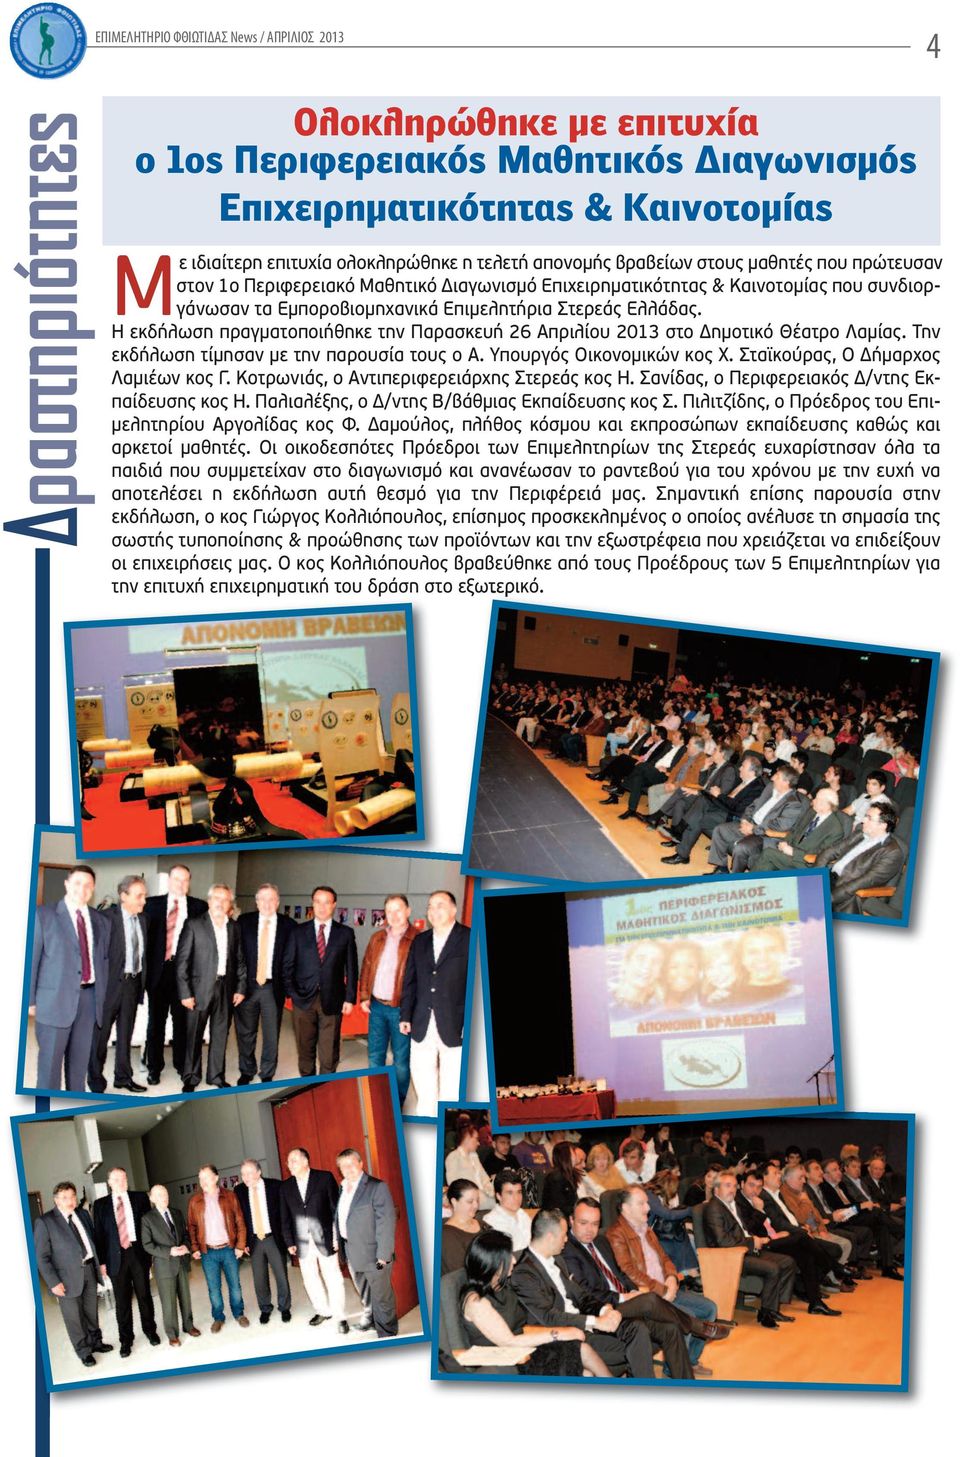 Η εκδήλωση πραγματοποιήθηκε την Παρασκευή 26 Απριλίου 2013 στο Δημοτικό Θέατρο Λαμίας. Την εκδήλωση τίμησαν με την παρουσία τους ο Α. Υπουργός Οικονομικών κος Χ. Σταϊκούρας, Ο Δήμαρχος Λαμιέων κος Γ.